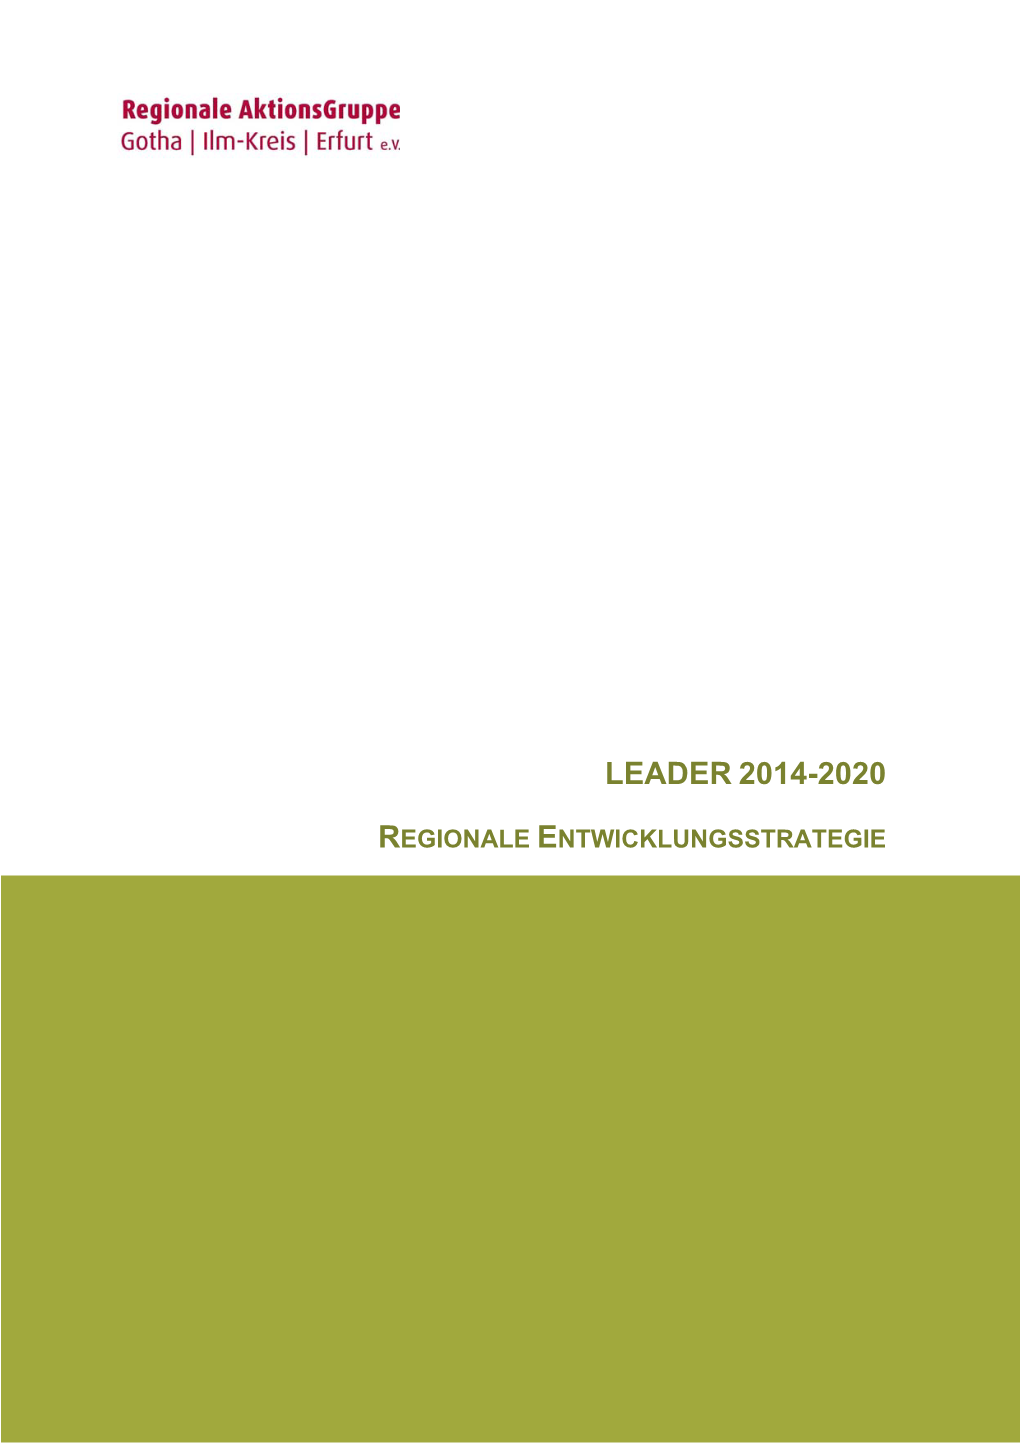 Leader 2014-2020